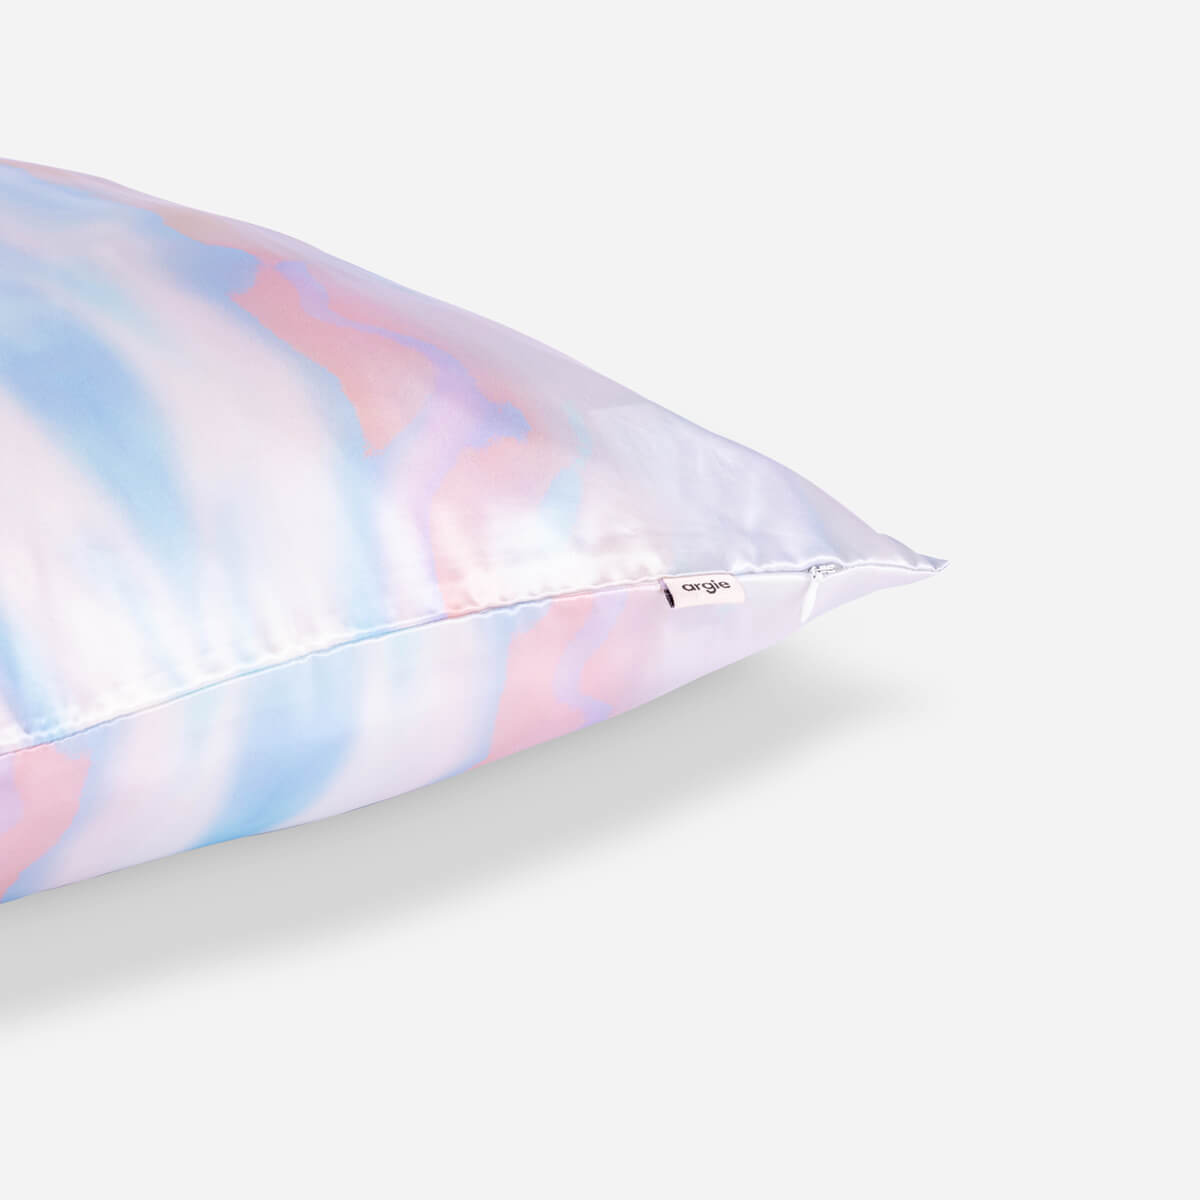 Silk Pillowcase - Tie Dye